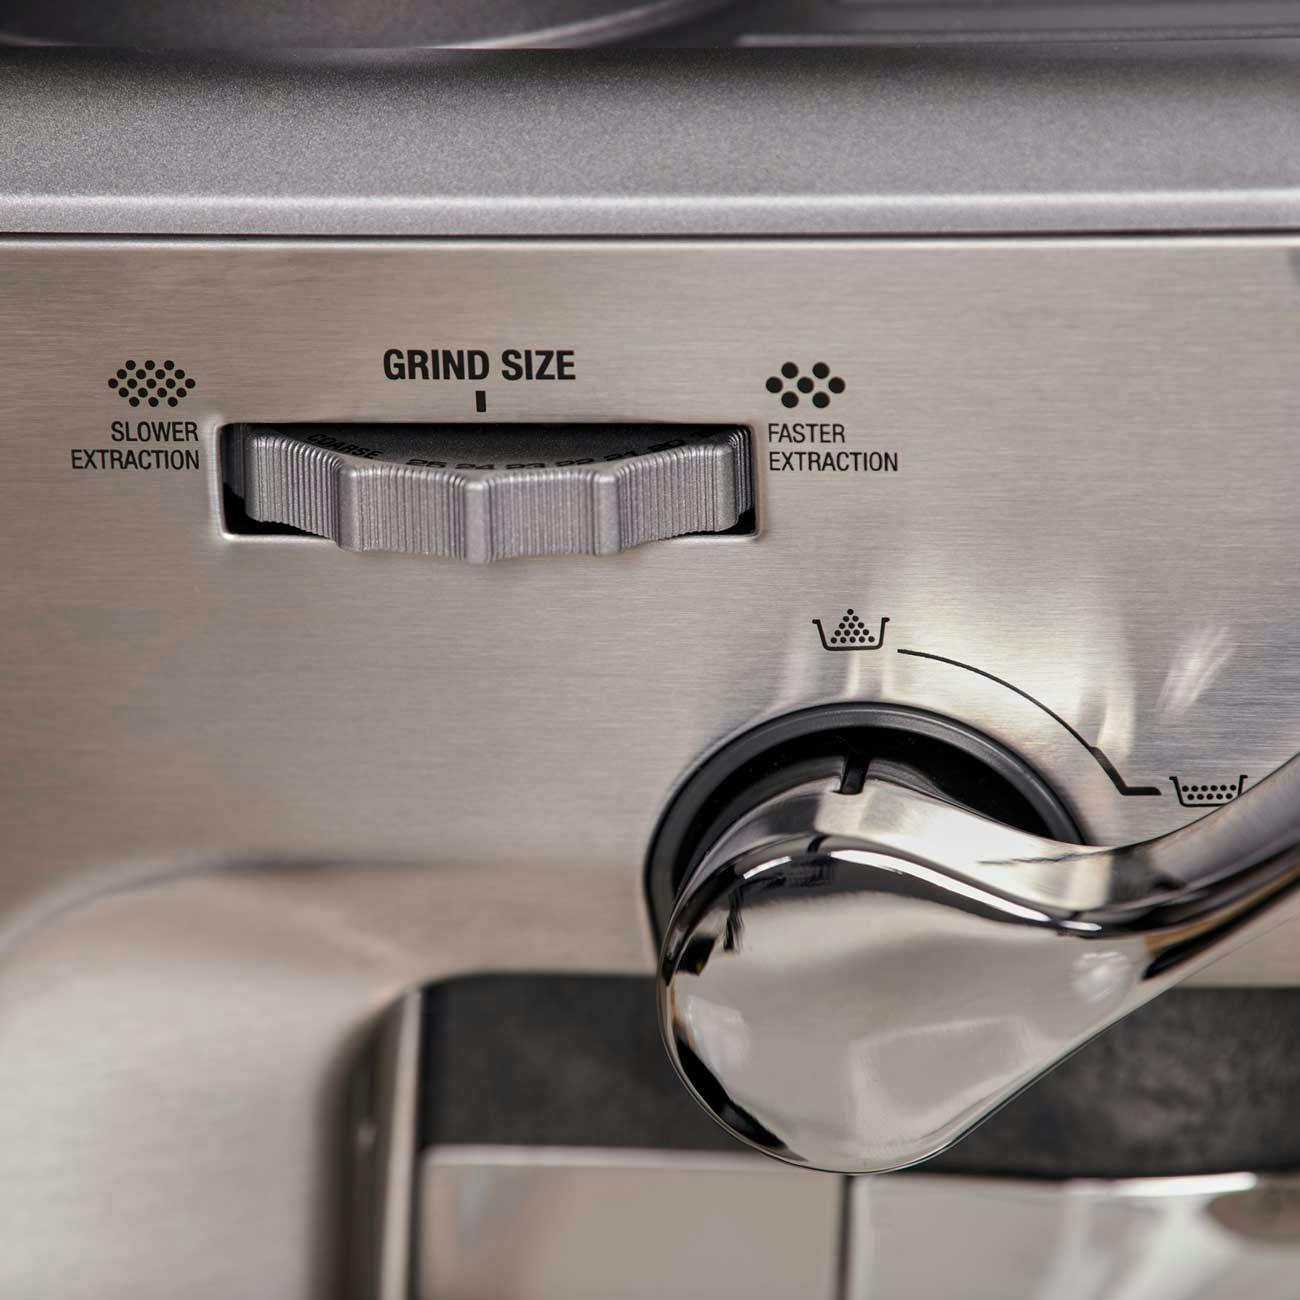 Semi-Automatic 580 - 700 W Electric Coffee Machine, Warranty: 1